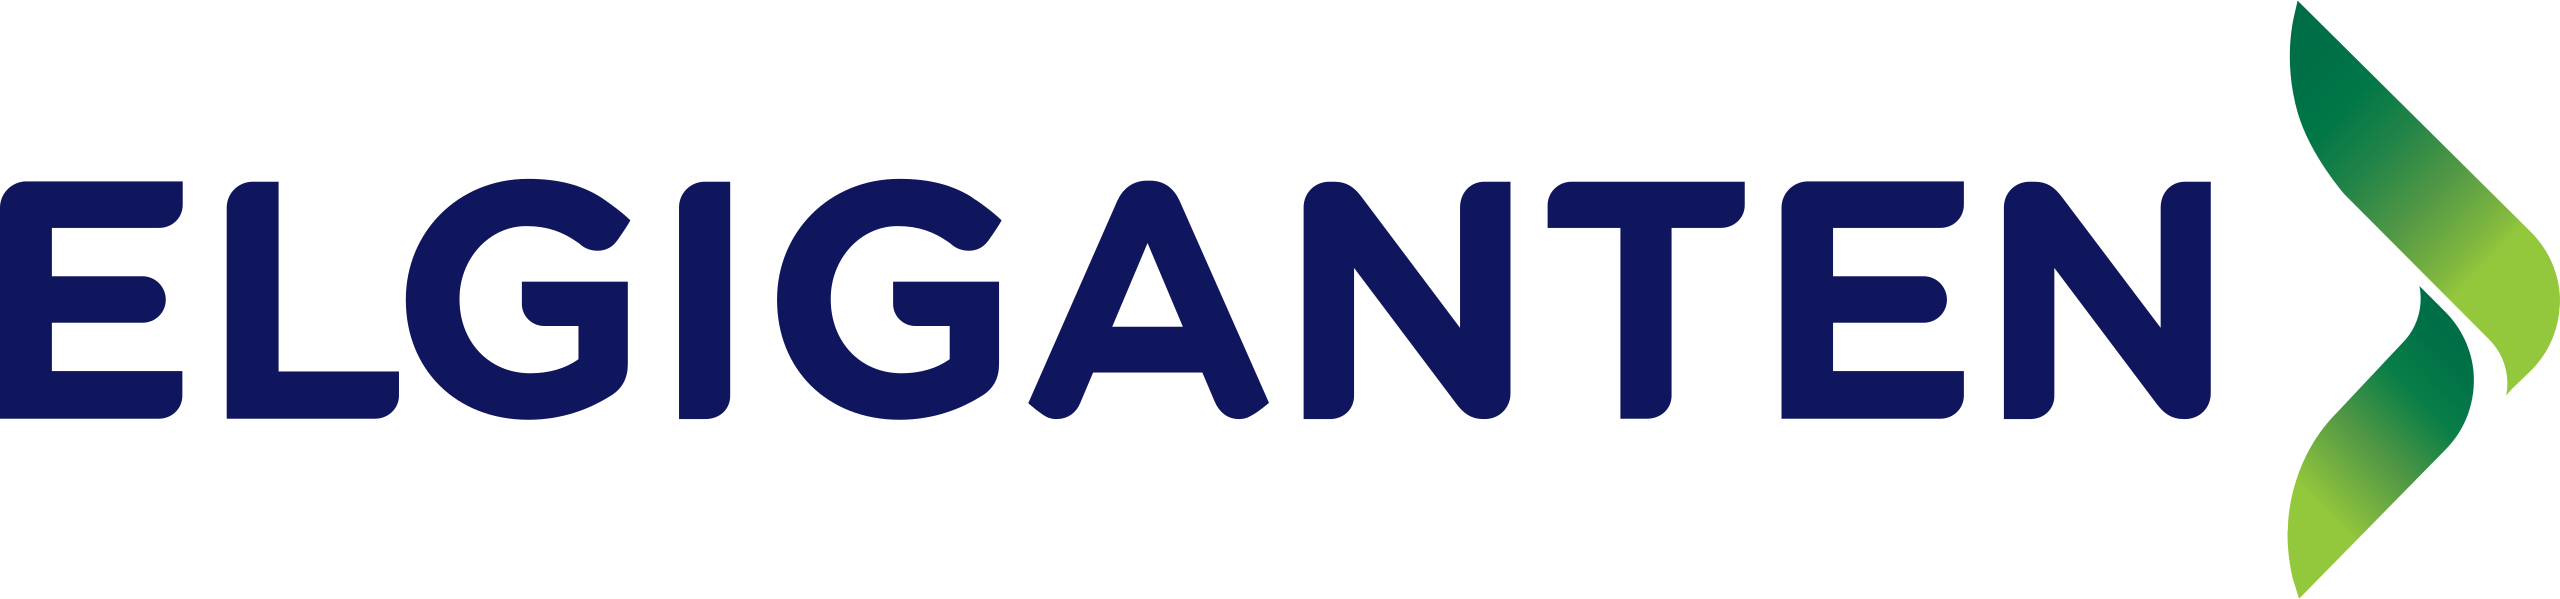 Elgiganten_logo.png